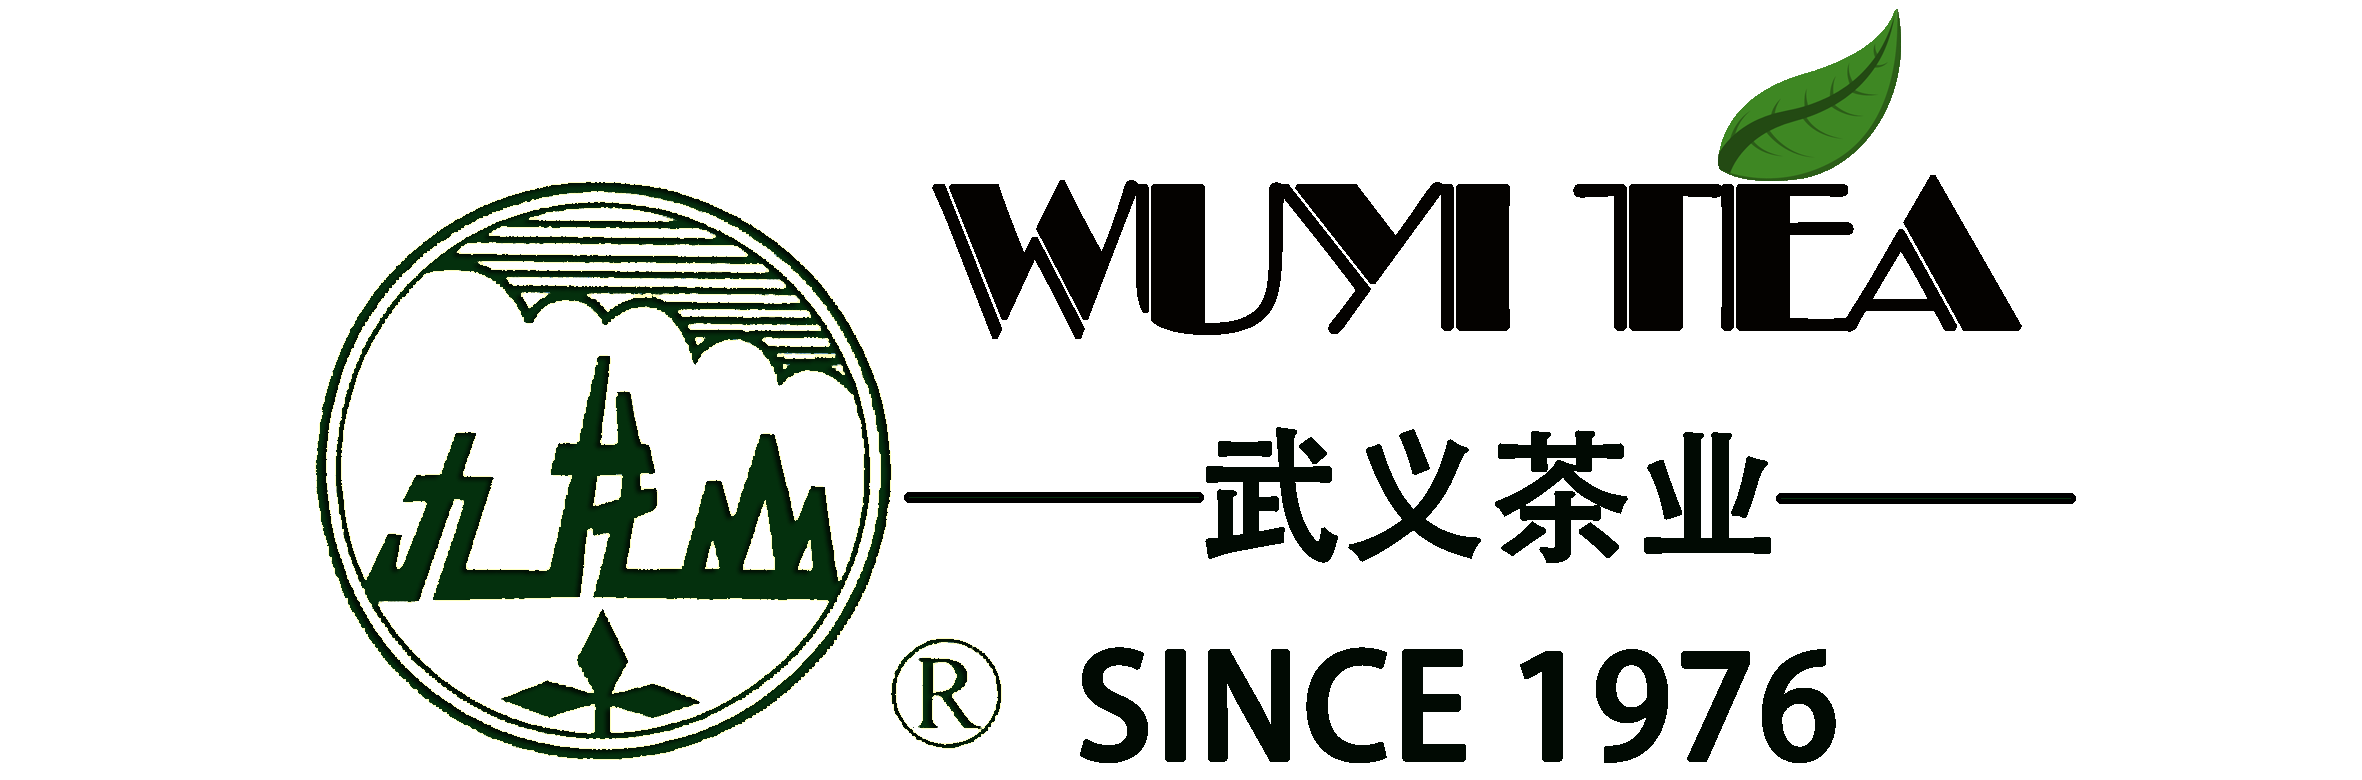 China Wu Yang Chun Yu Liu Bei Xiang Suppliers, Manufacturers - Factory Direct Price - JIULONGSHAN